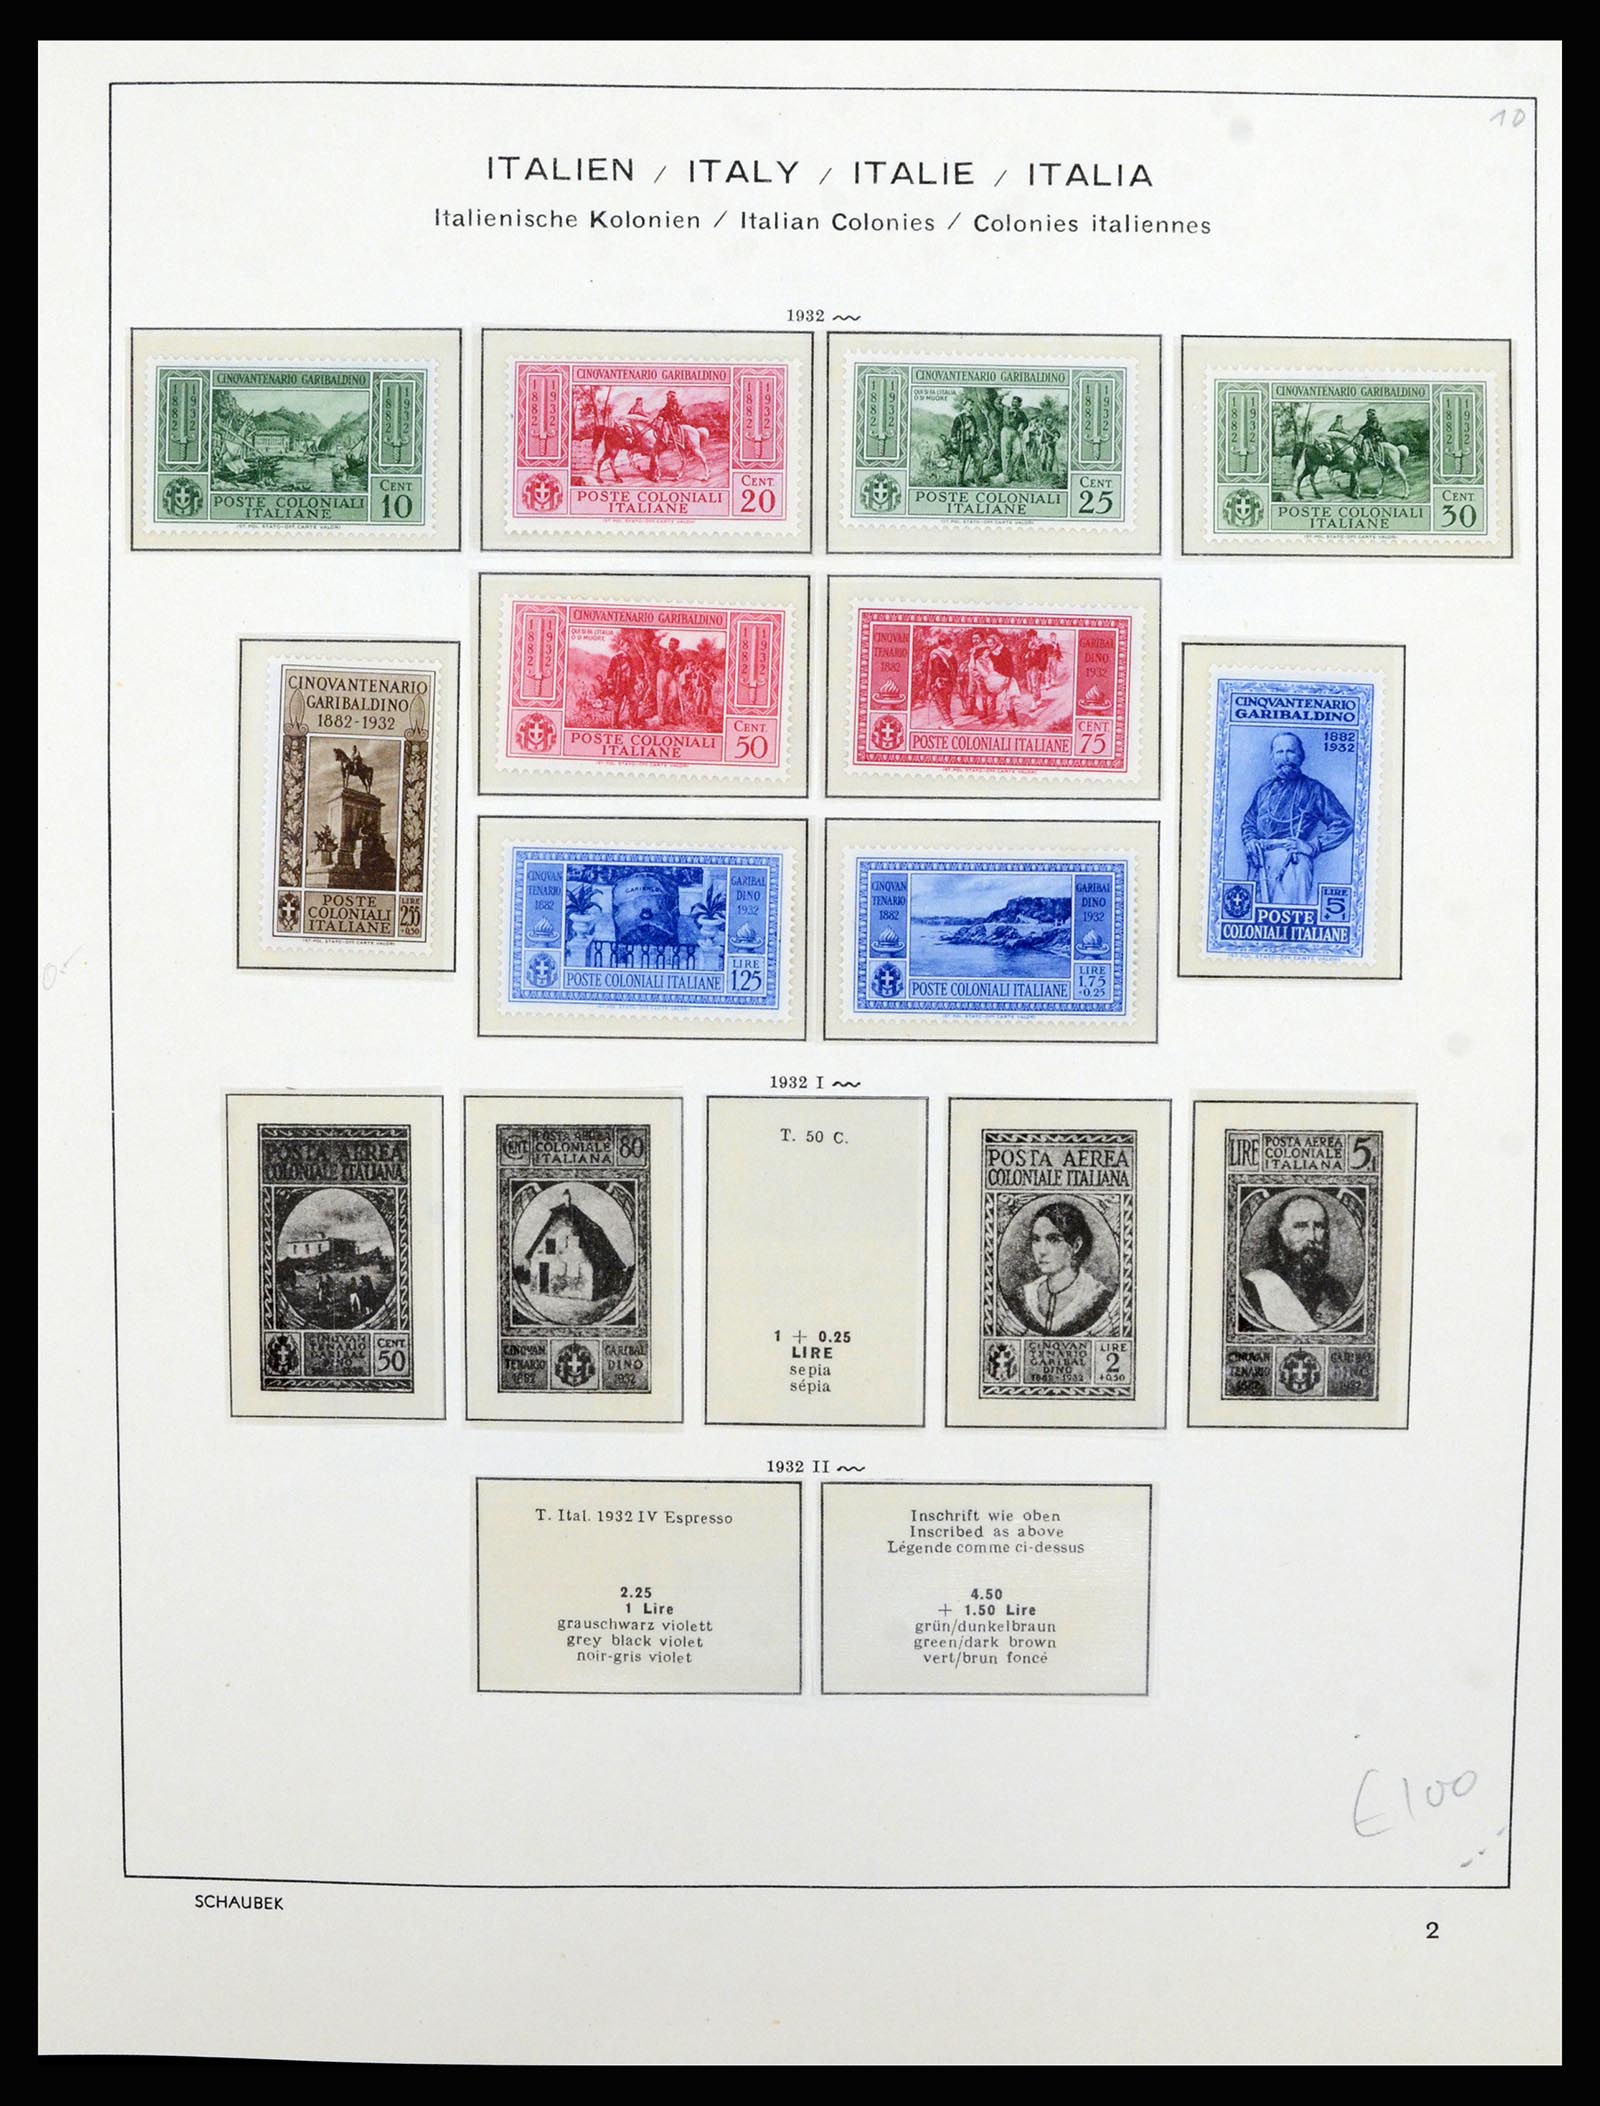 36577 023 - Stamp collection 36577 Italiaanse gebieden 1870-1940.